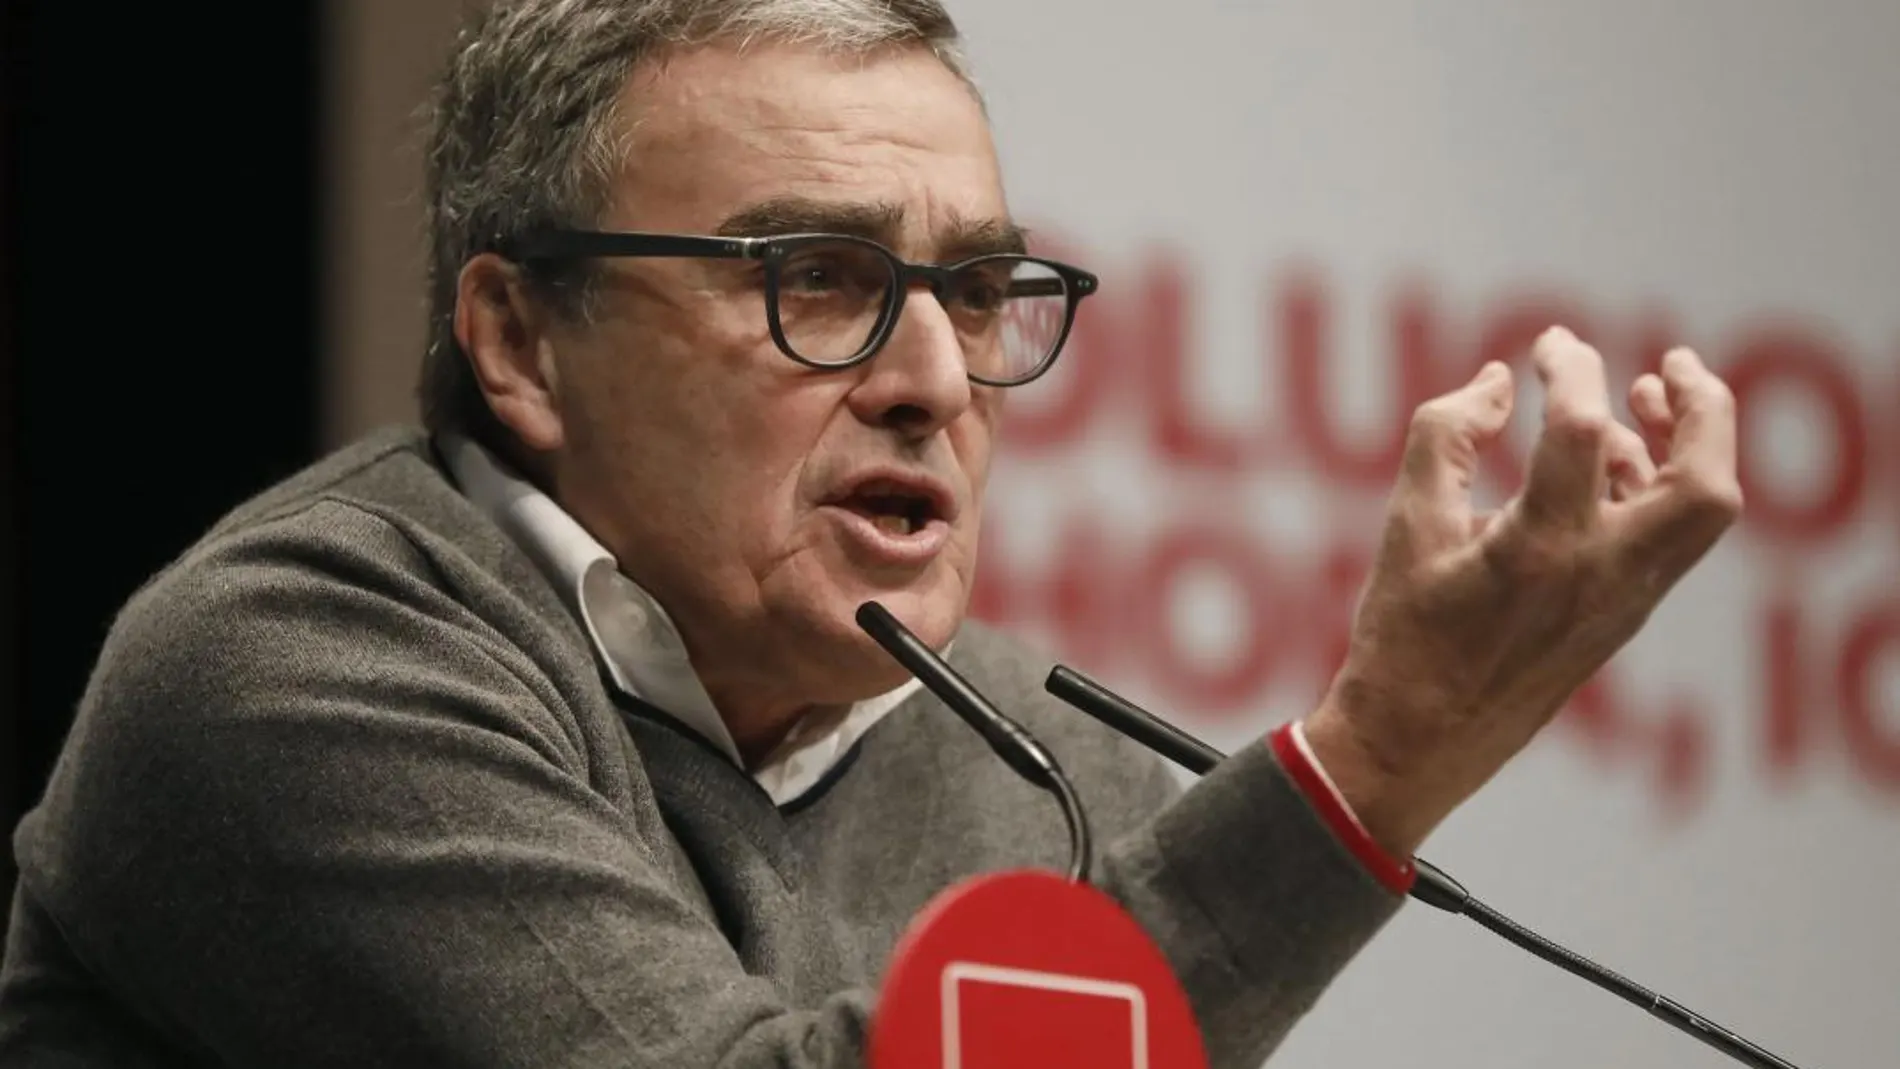 El alcalde de Lérida, el socialista Angel Ros, ha sido nombrado embajador en Andorra